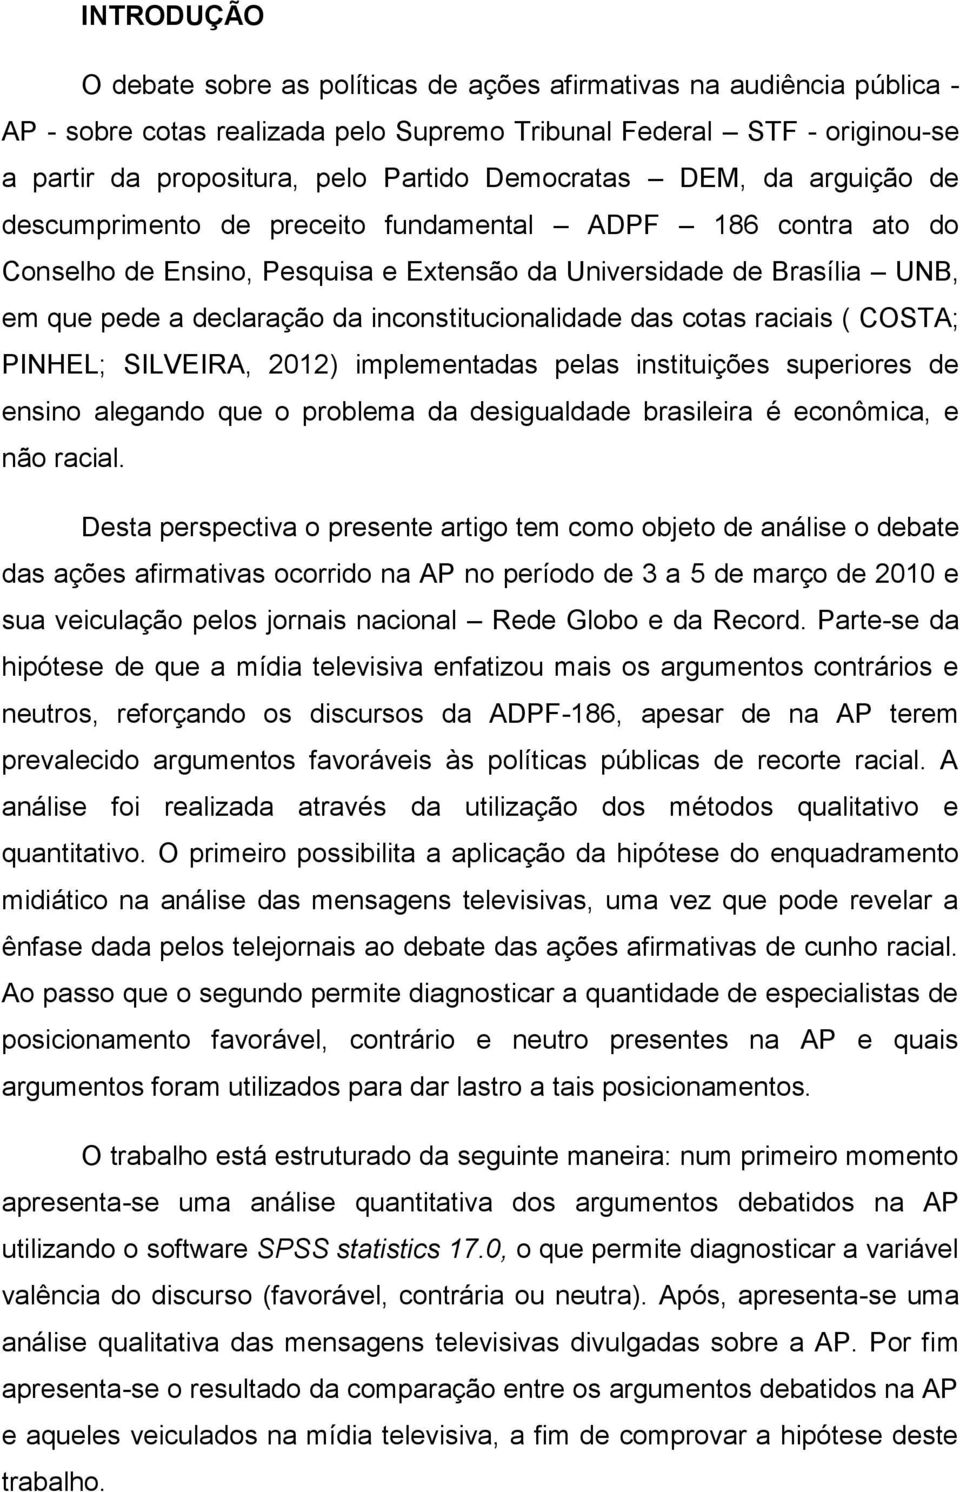 inconstitucionalidade das cotas raciais ( COSTA; PINHEL; SILVEIRA, 2012) implementadas pelas instituições superiores de ensino alegando que o problema da desigualdade brasileira é econômica, e não